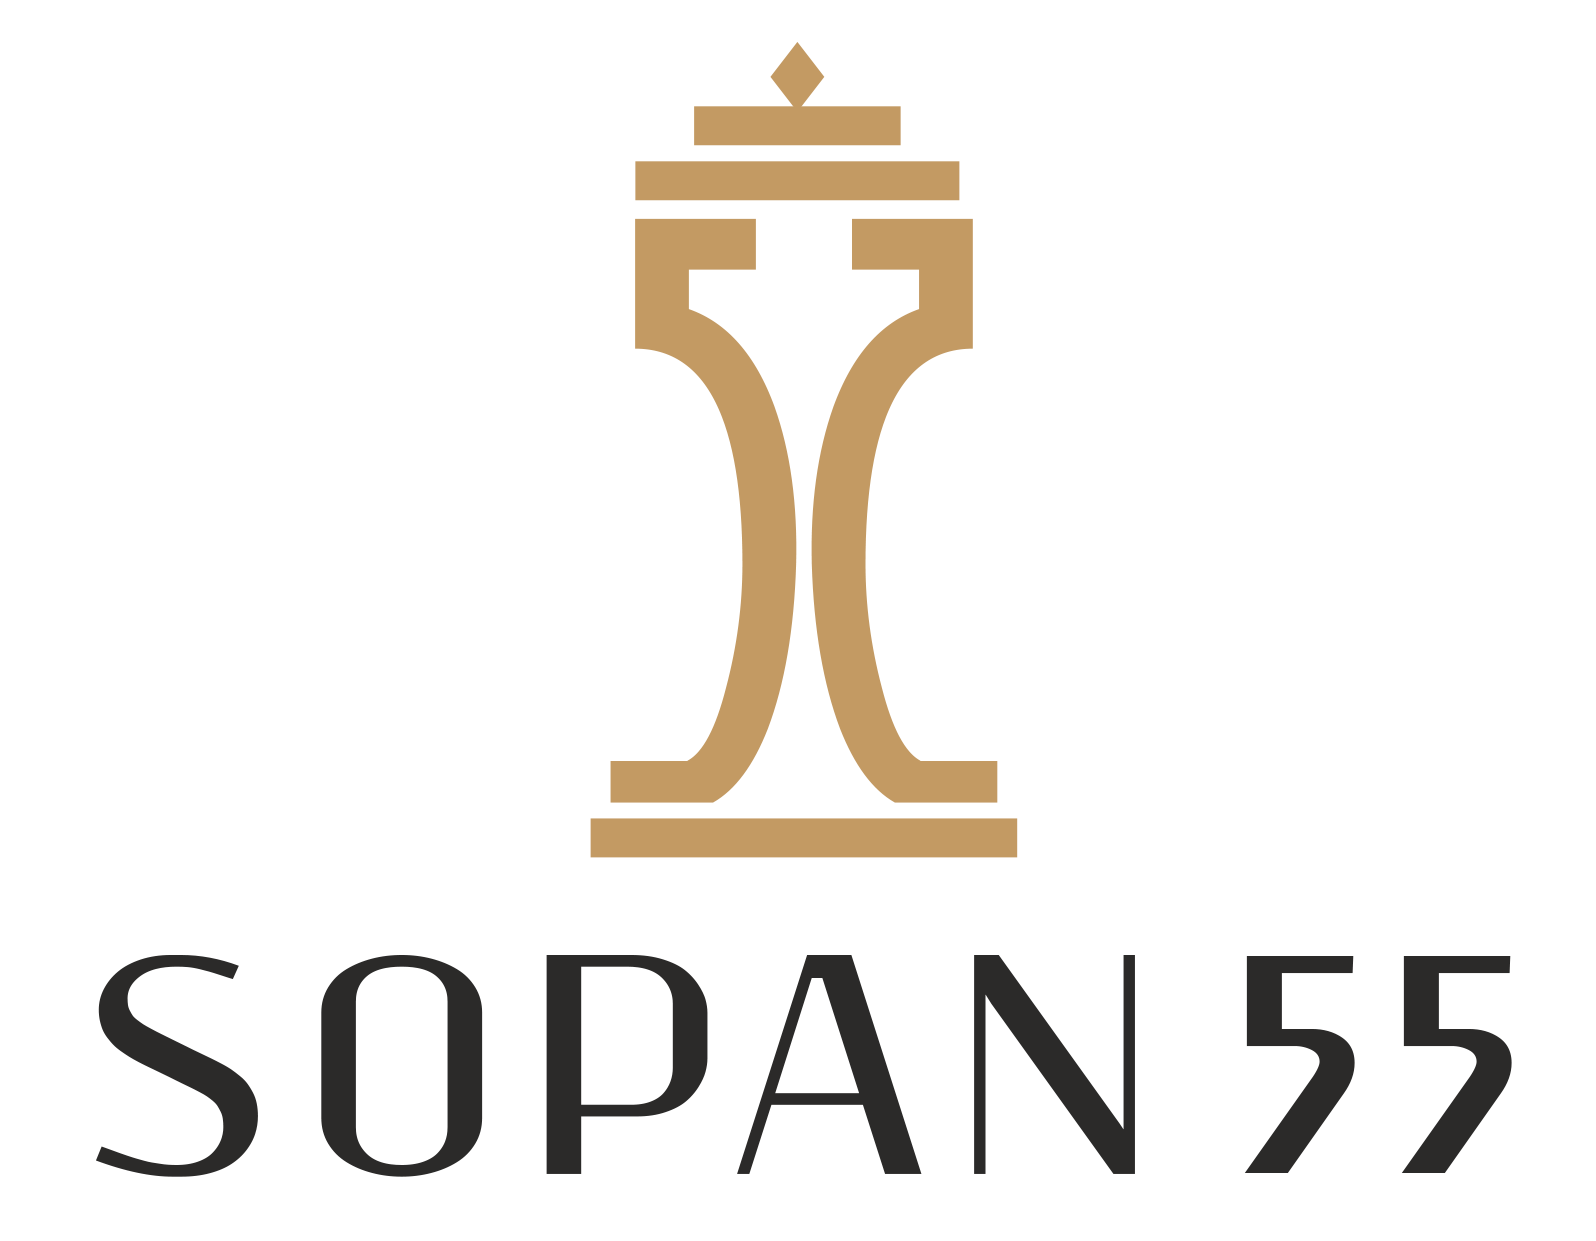 sopan 55 final logo